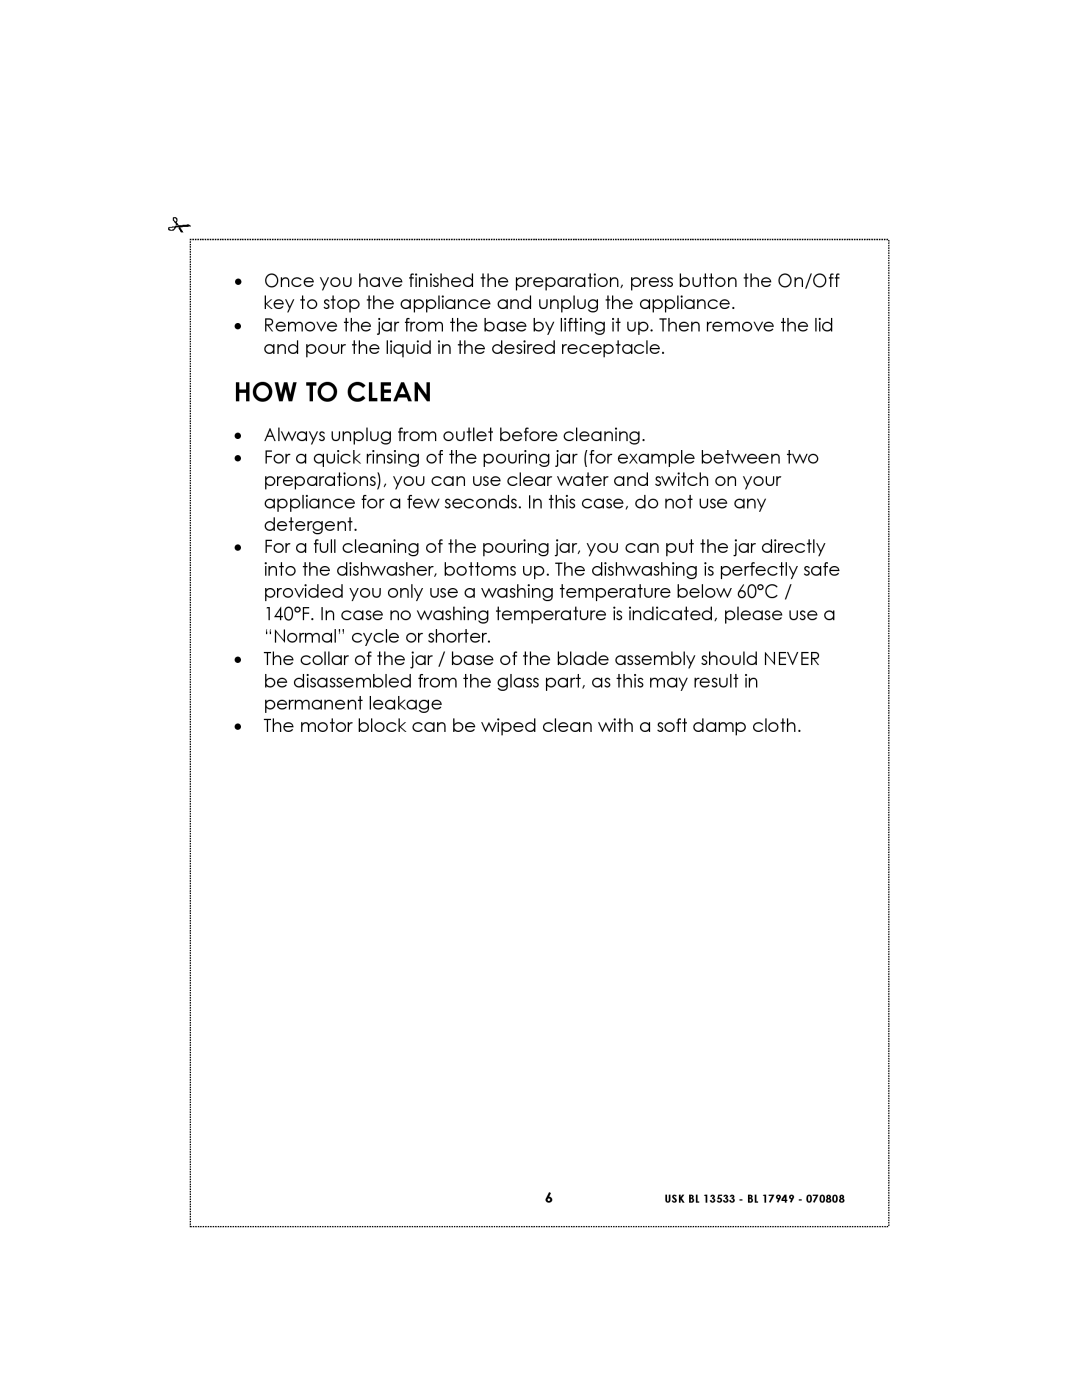 Kalorik USK BL 17949 BL 1, USK BL 13533 BL 6 manual How To Clean 